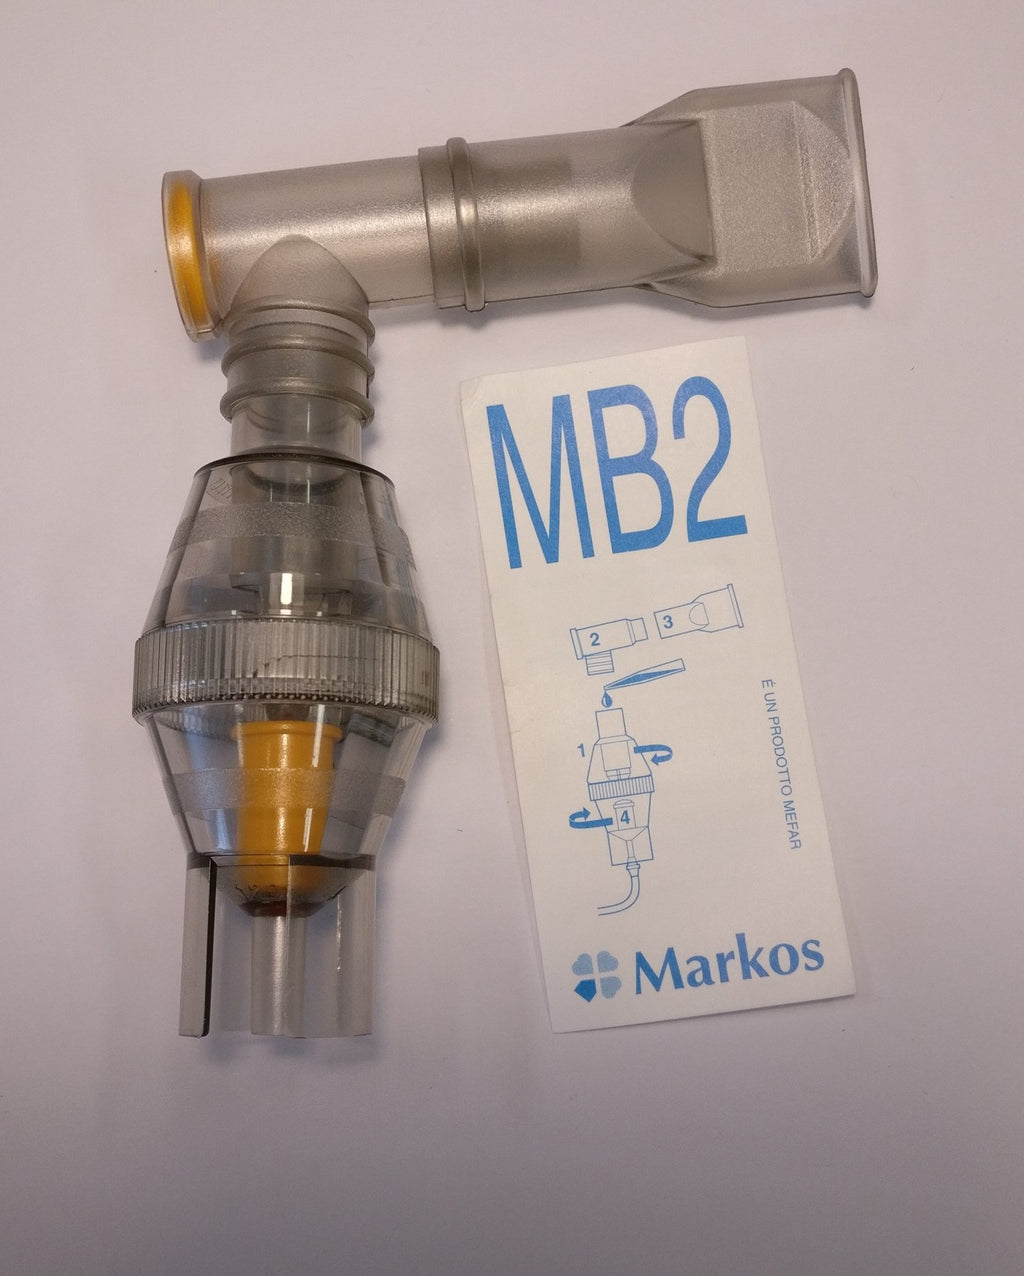 Ampolla per nebulizzatore Markos MB2